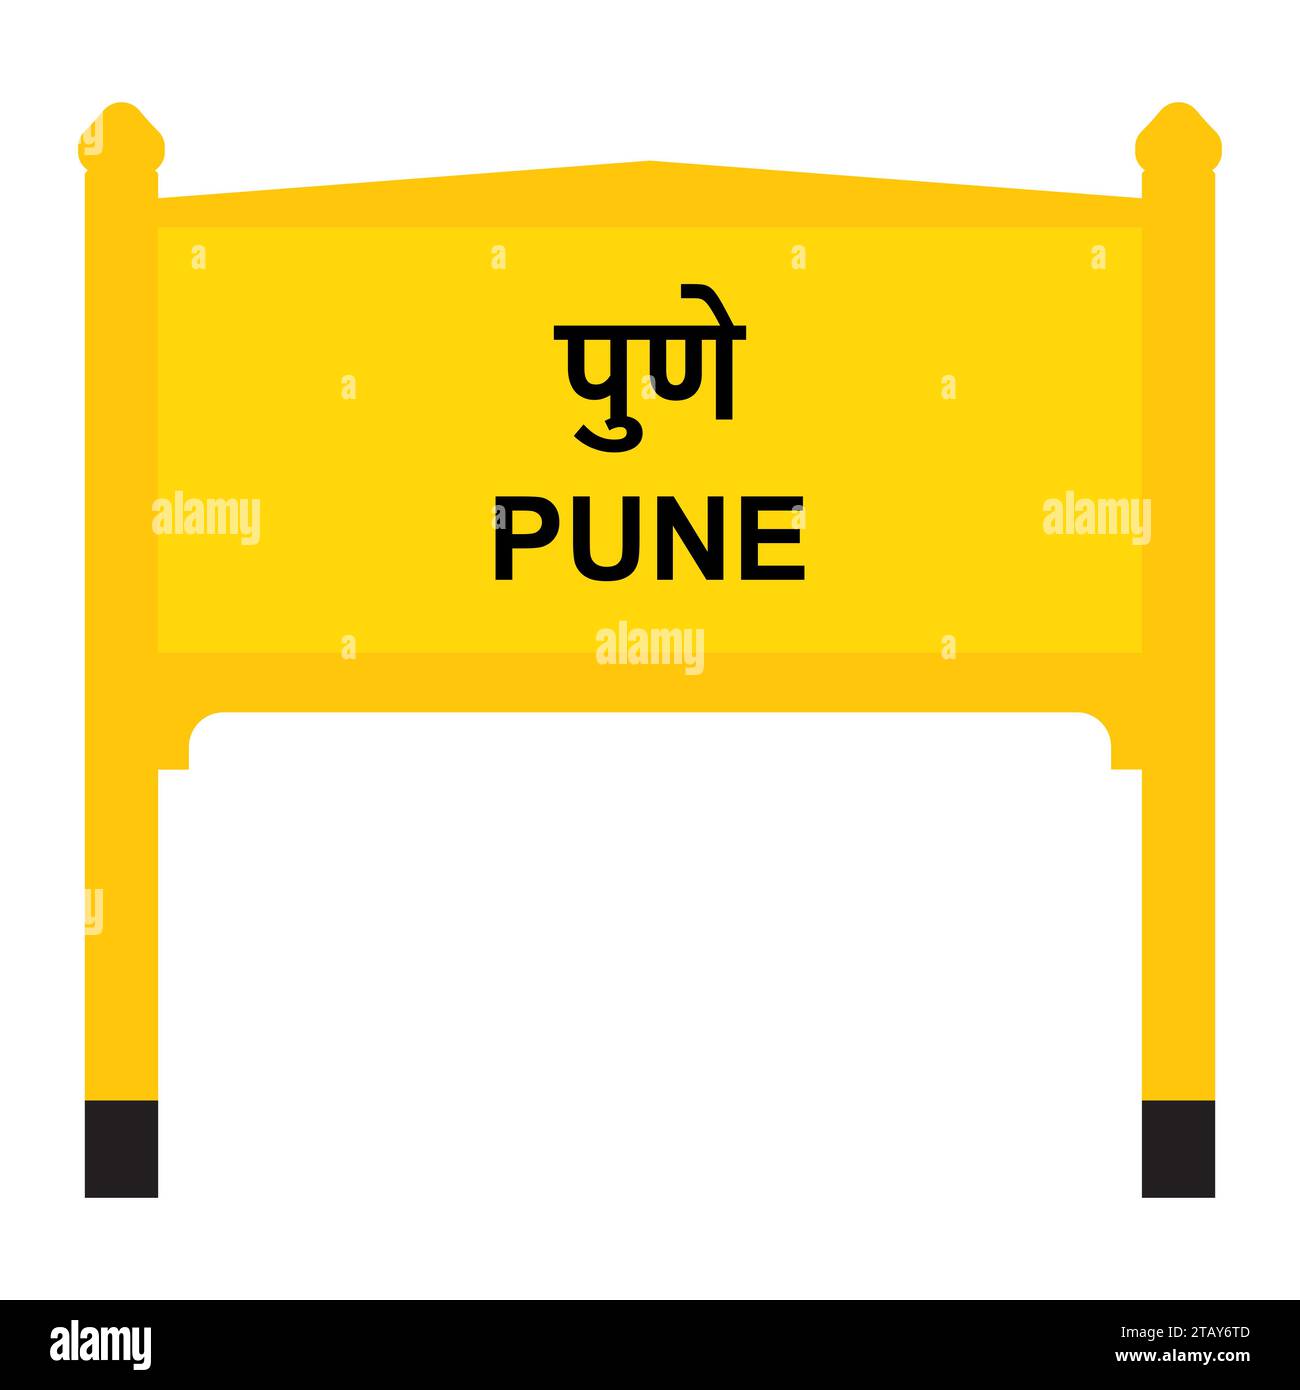 Pune Junction Railways Namensschild isoliert auf weiß Stock Vektor